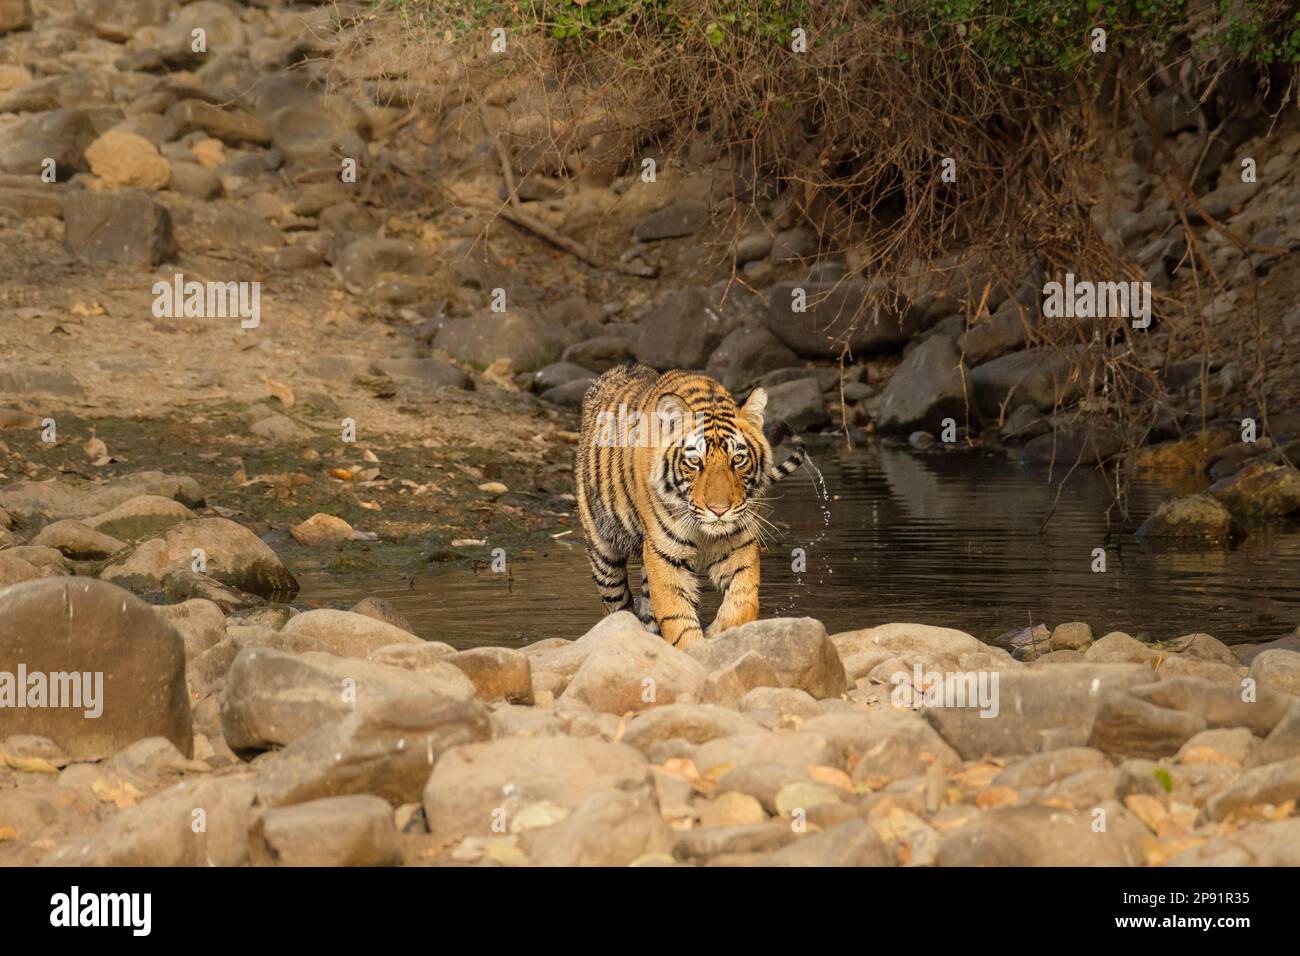 Le tigre, Panthera tigris, sort de l'eau, marche vers la caméra. Parc national de Ranthambore, Rajasthan, Inde Banque D'Images